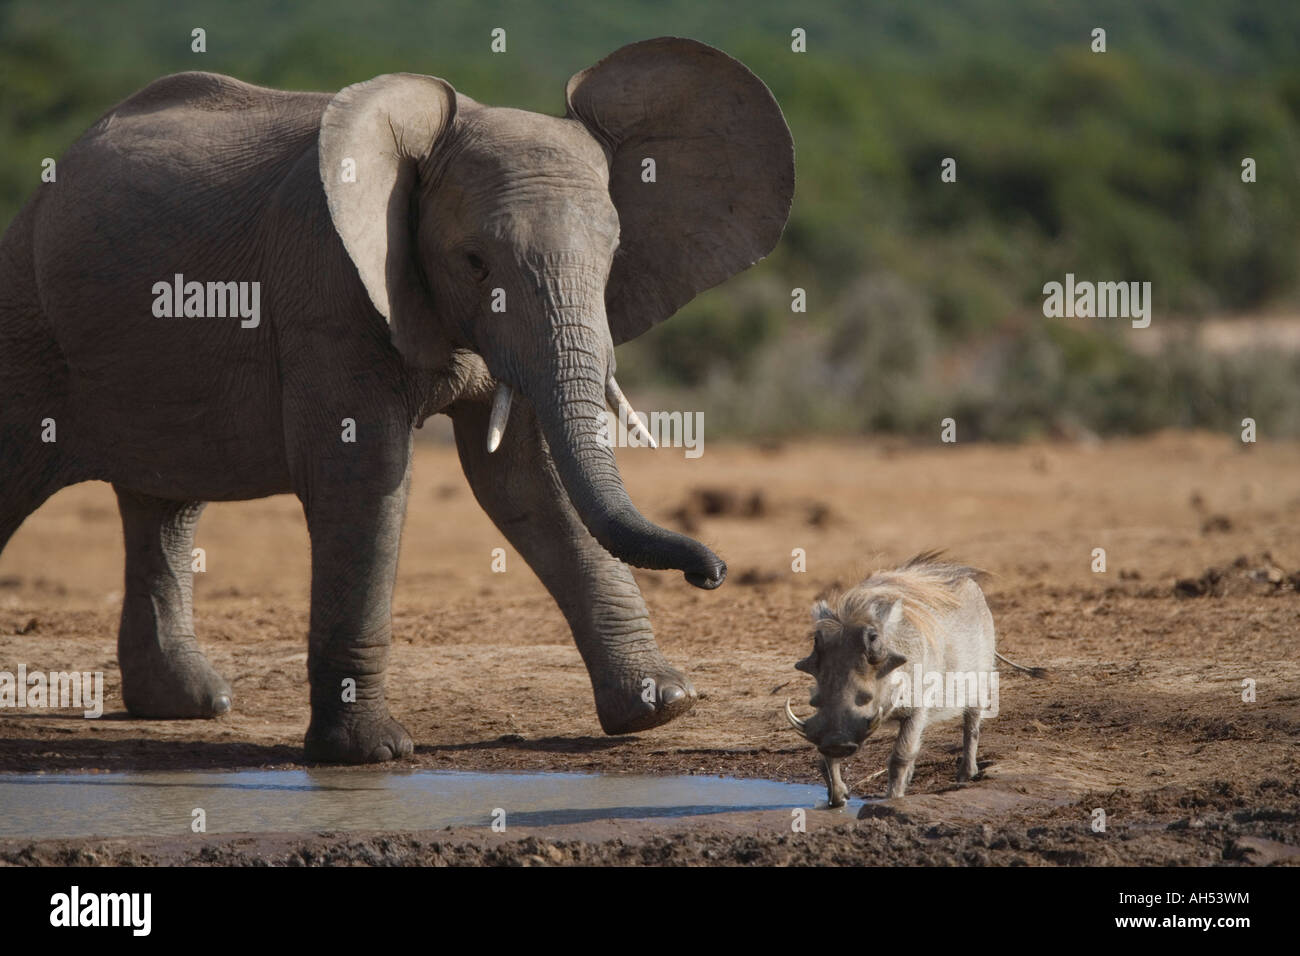 African elephant Loxodonta africana chasing warthog Addo Elephant National Park South Africa Stock Photo